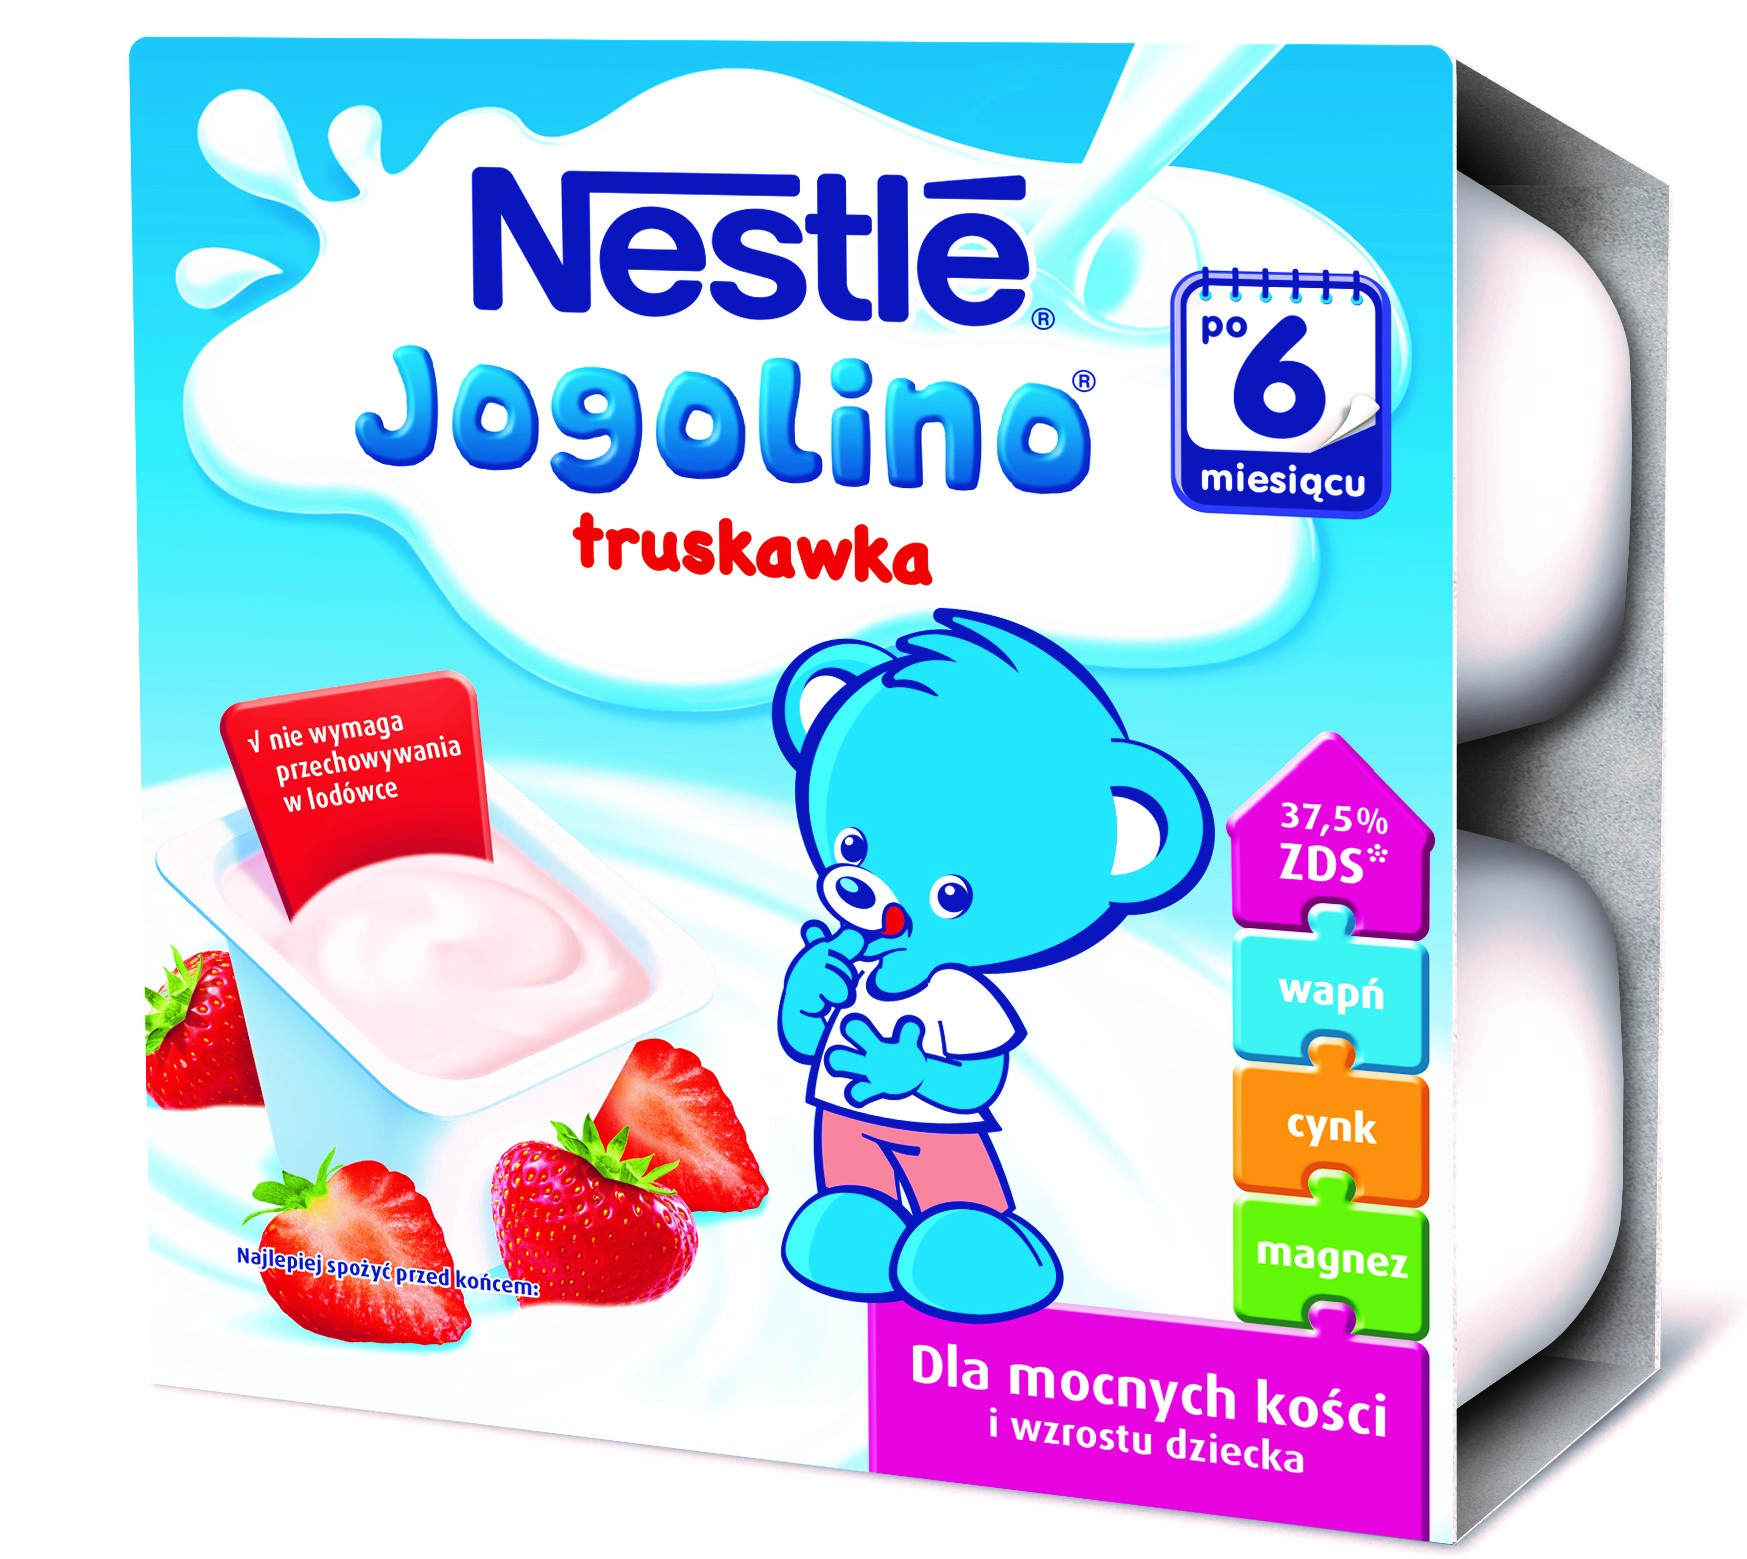 Deserki Jogolino od Nestlé w nowym smaku